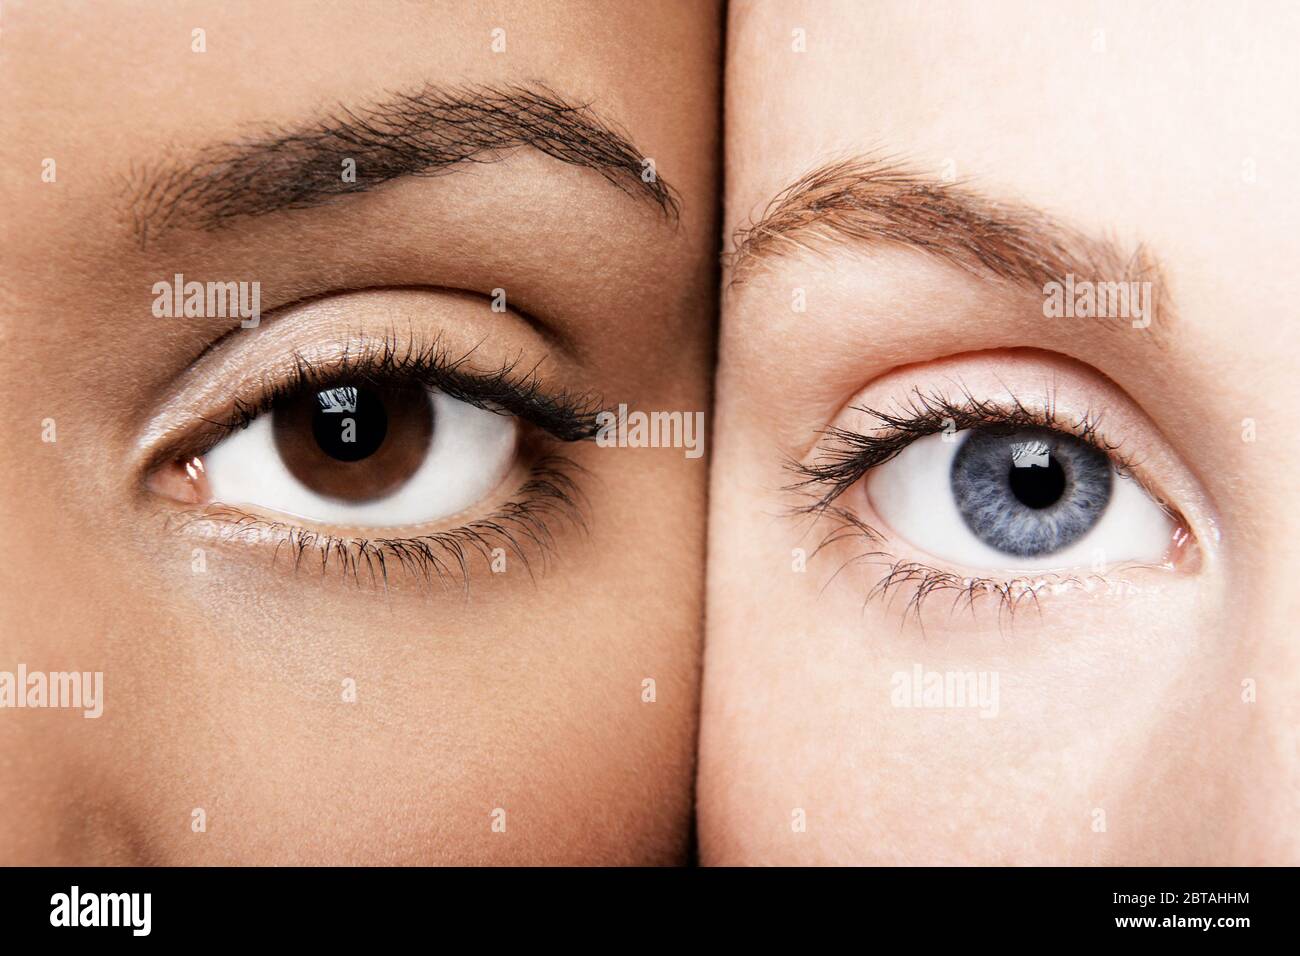 Des femmes noires et blanches qui rassemblent des visages différents Banque D'Images